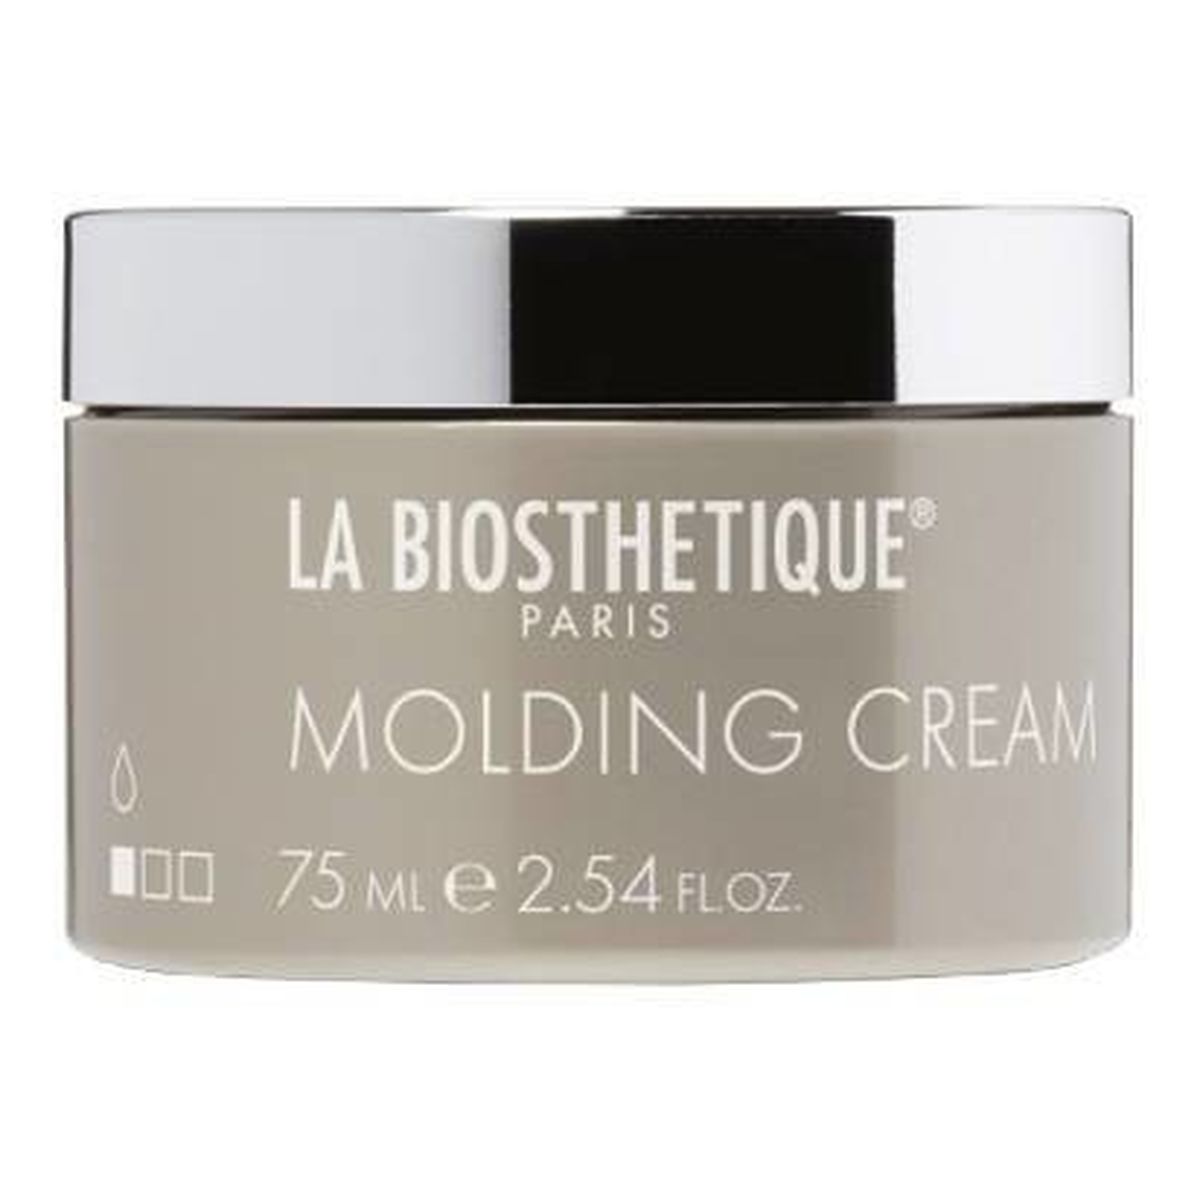 La Biosthetique Molding Cream delikatny krem do modelowania włosów 75ml